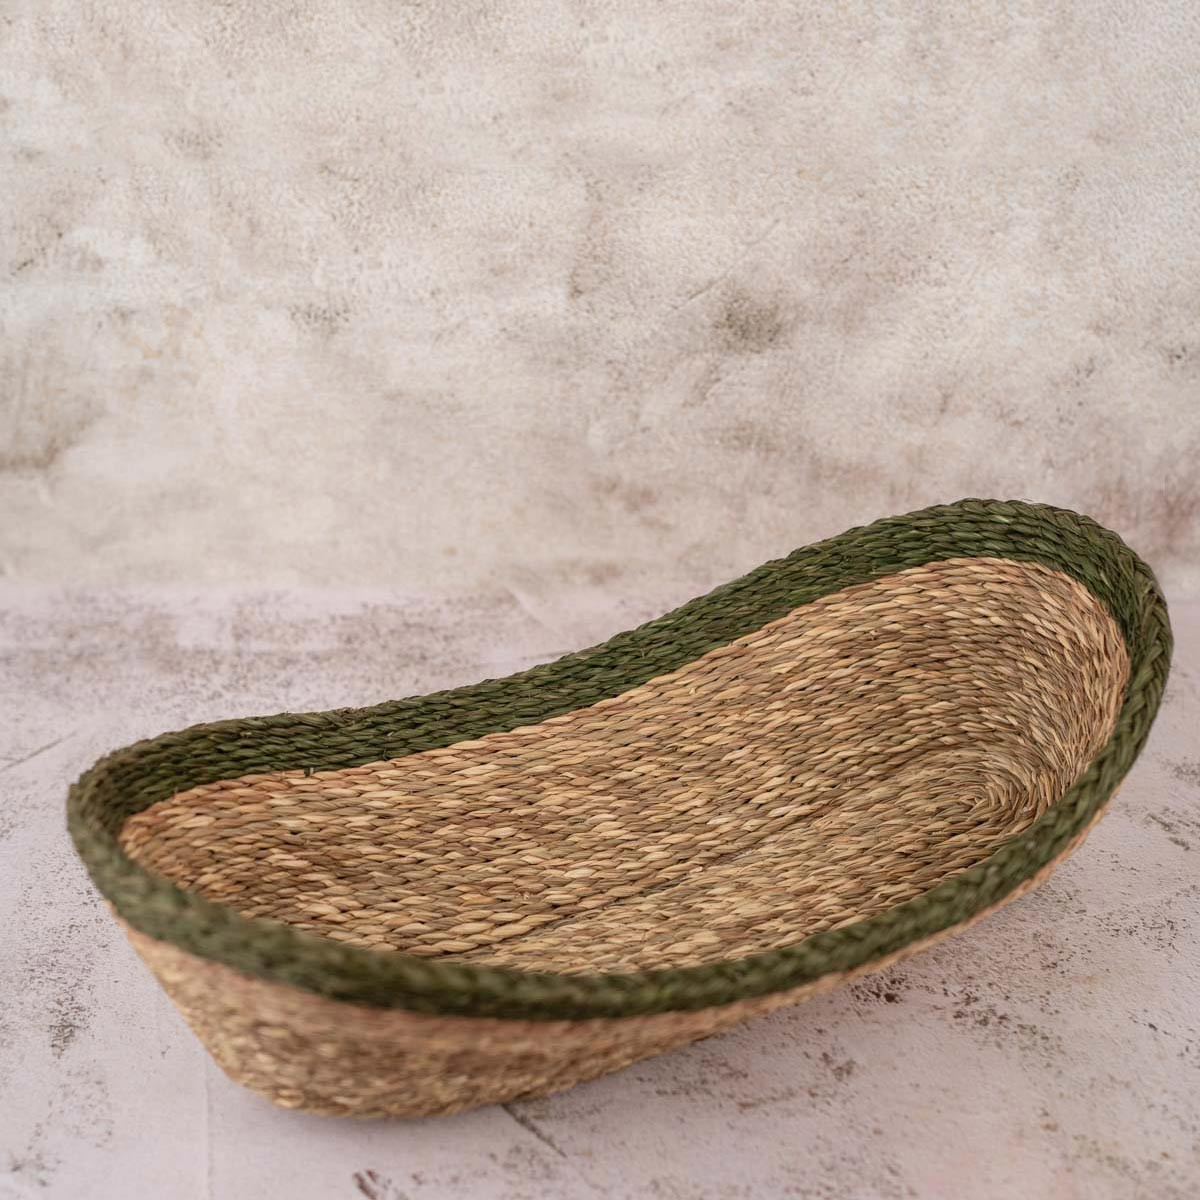 Sabai Grass Basket